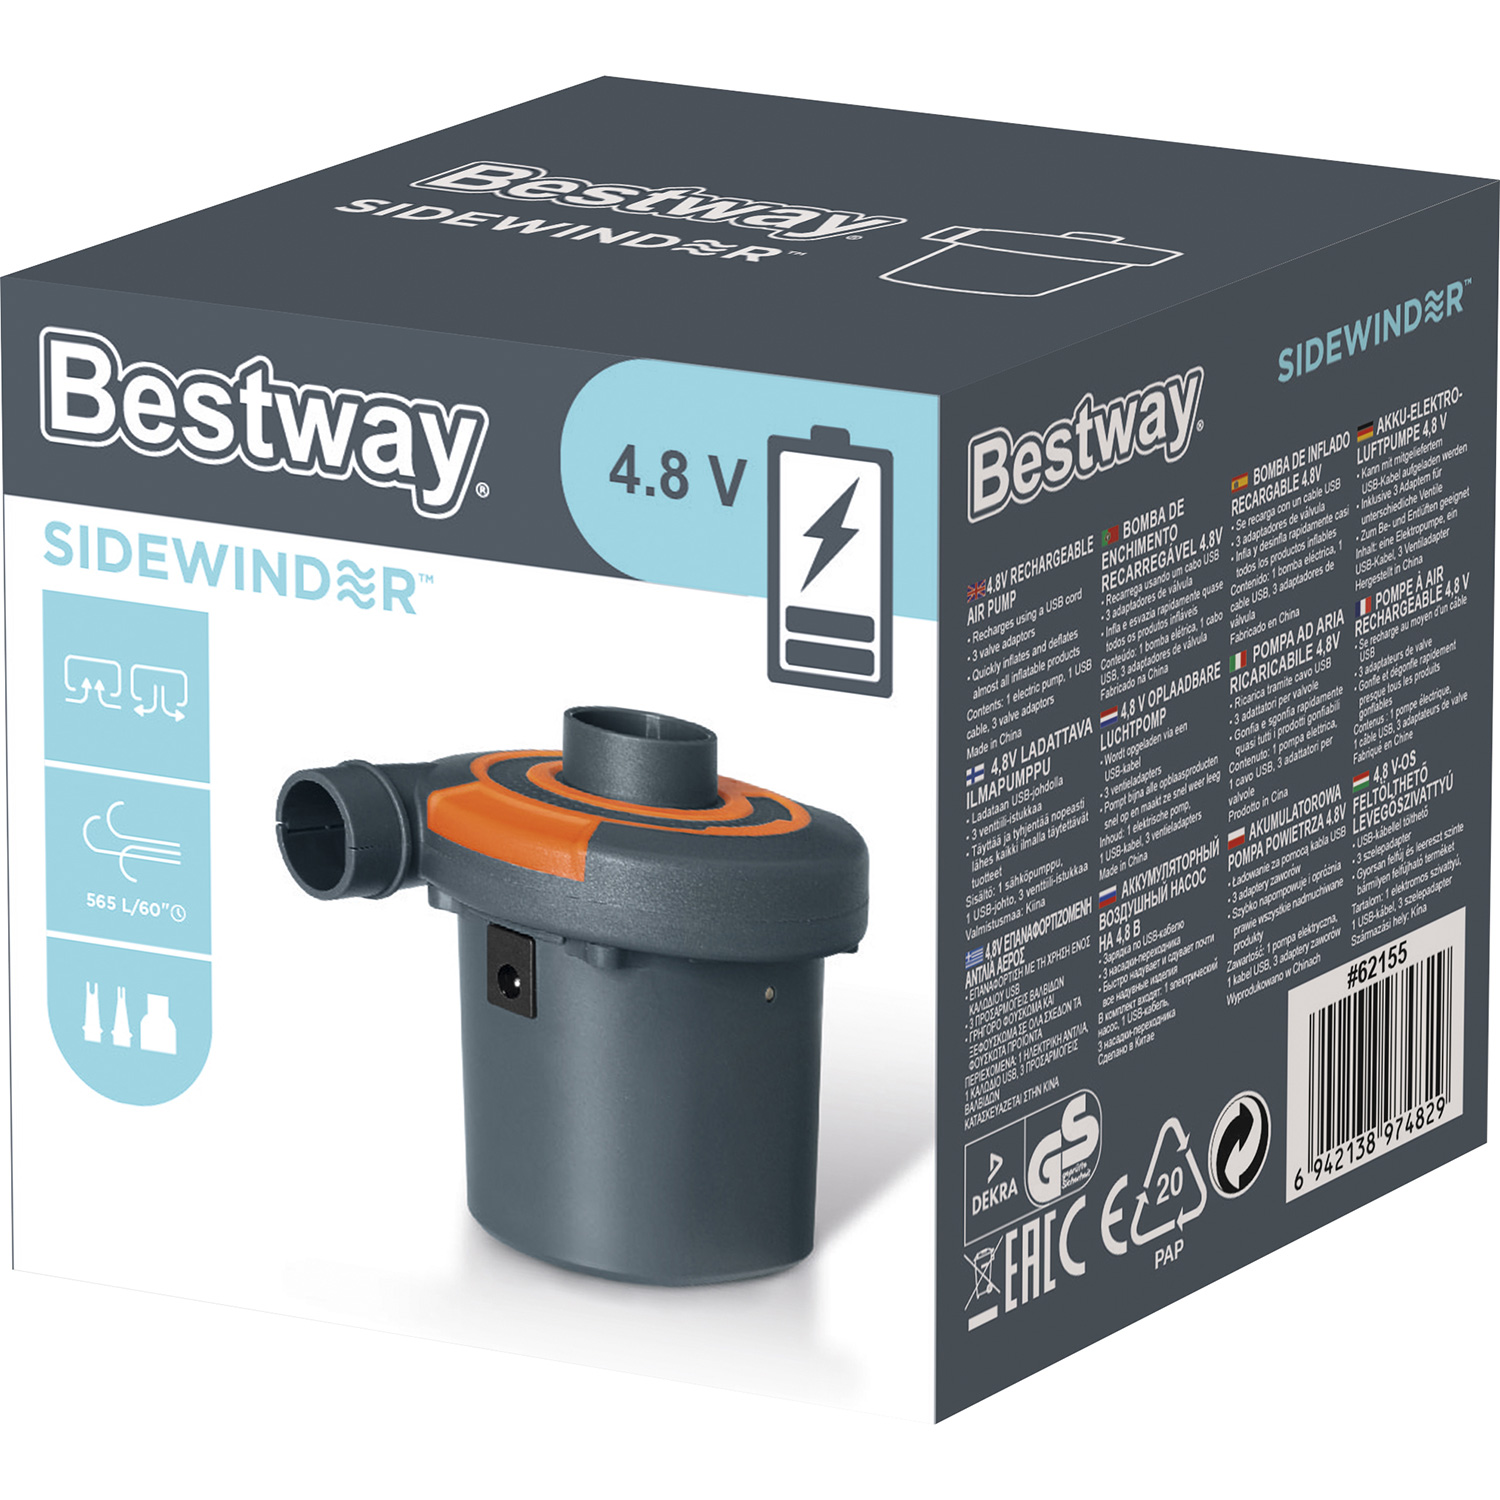 Bestway rechargeable air pump Sidewinder 4.8V